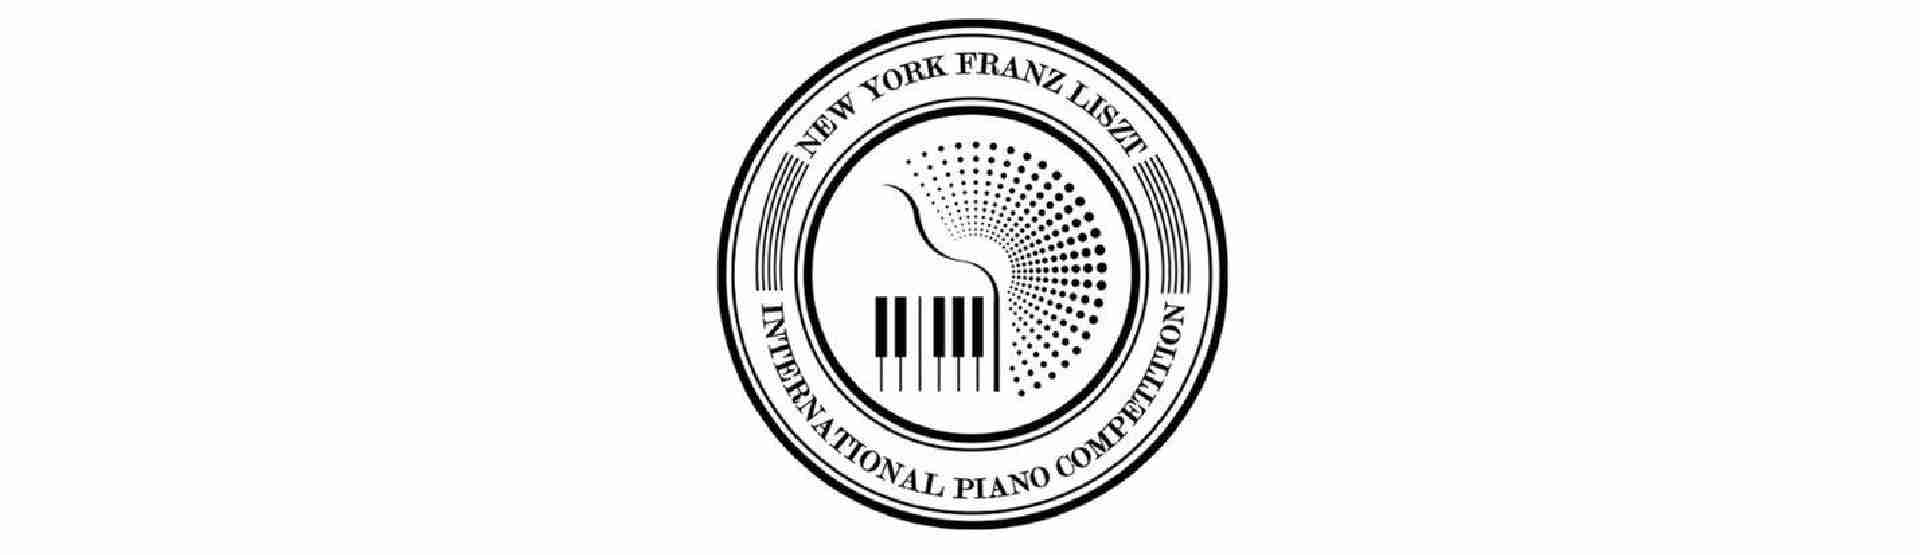 Versenyfelhívás: II. New York-i Liszt Ferenc Zongoraverseny